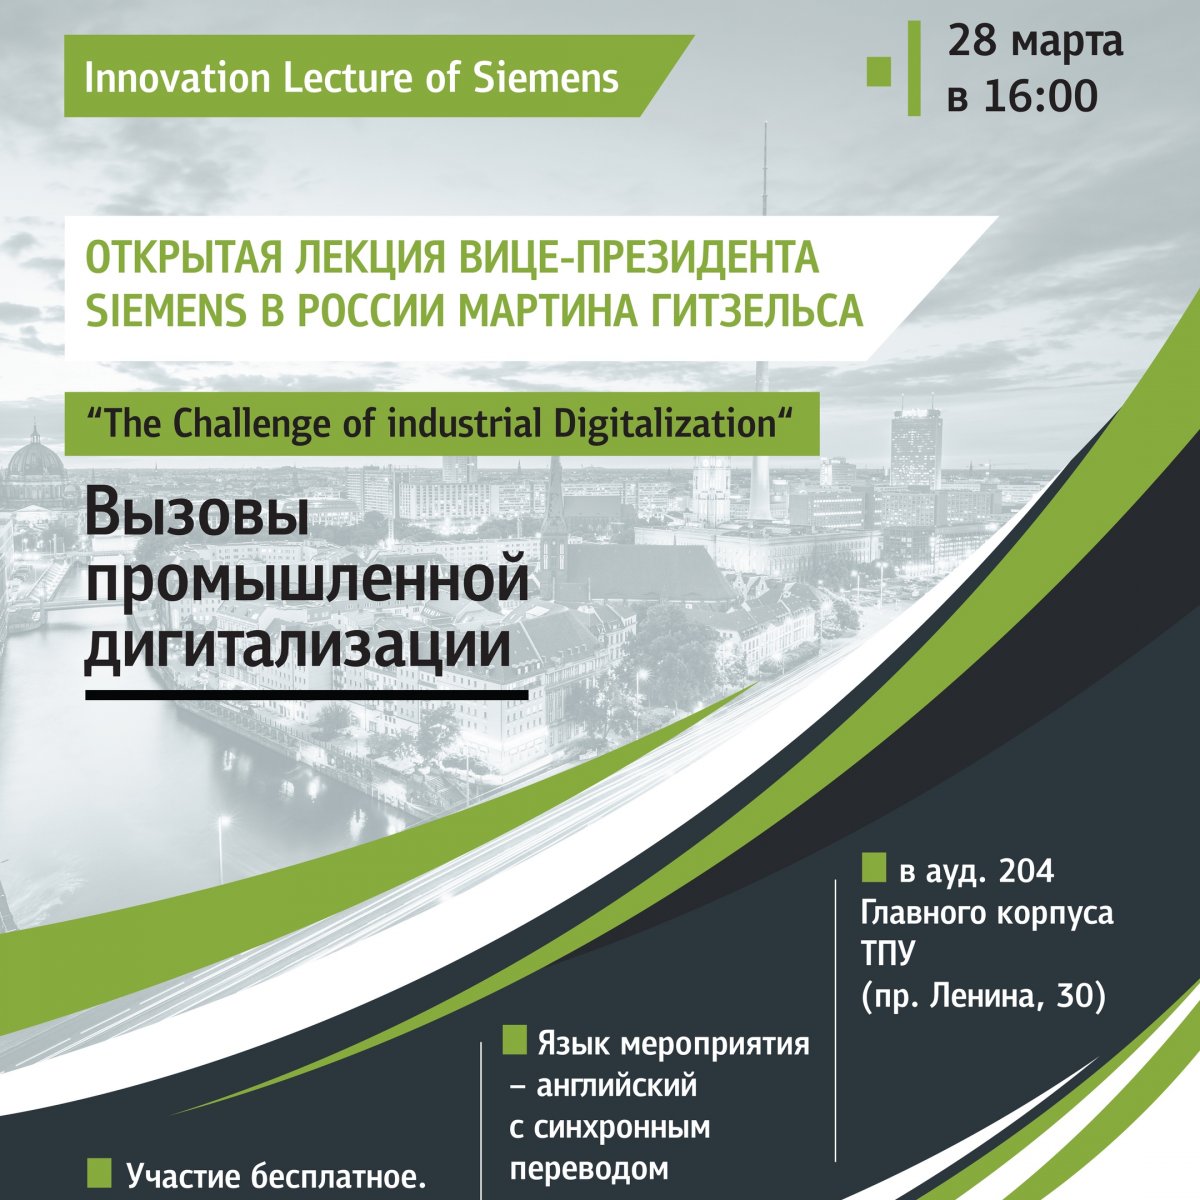 Приглашаем на открытую лекцию вице-президента Siemens в России Мартина Гитсельса "The Challenge of industrial Digitalization" ("Вызовы промышленной дигитализации")